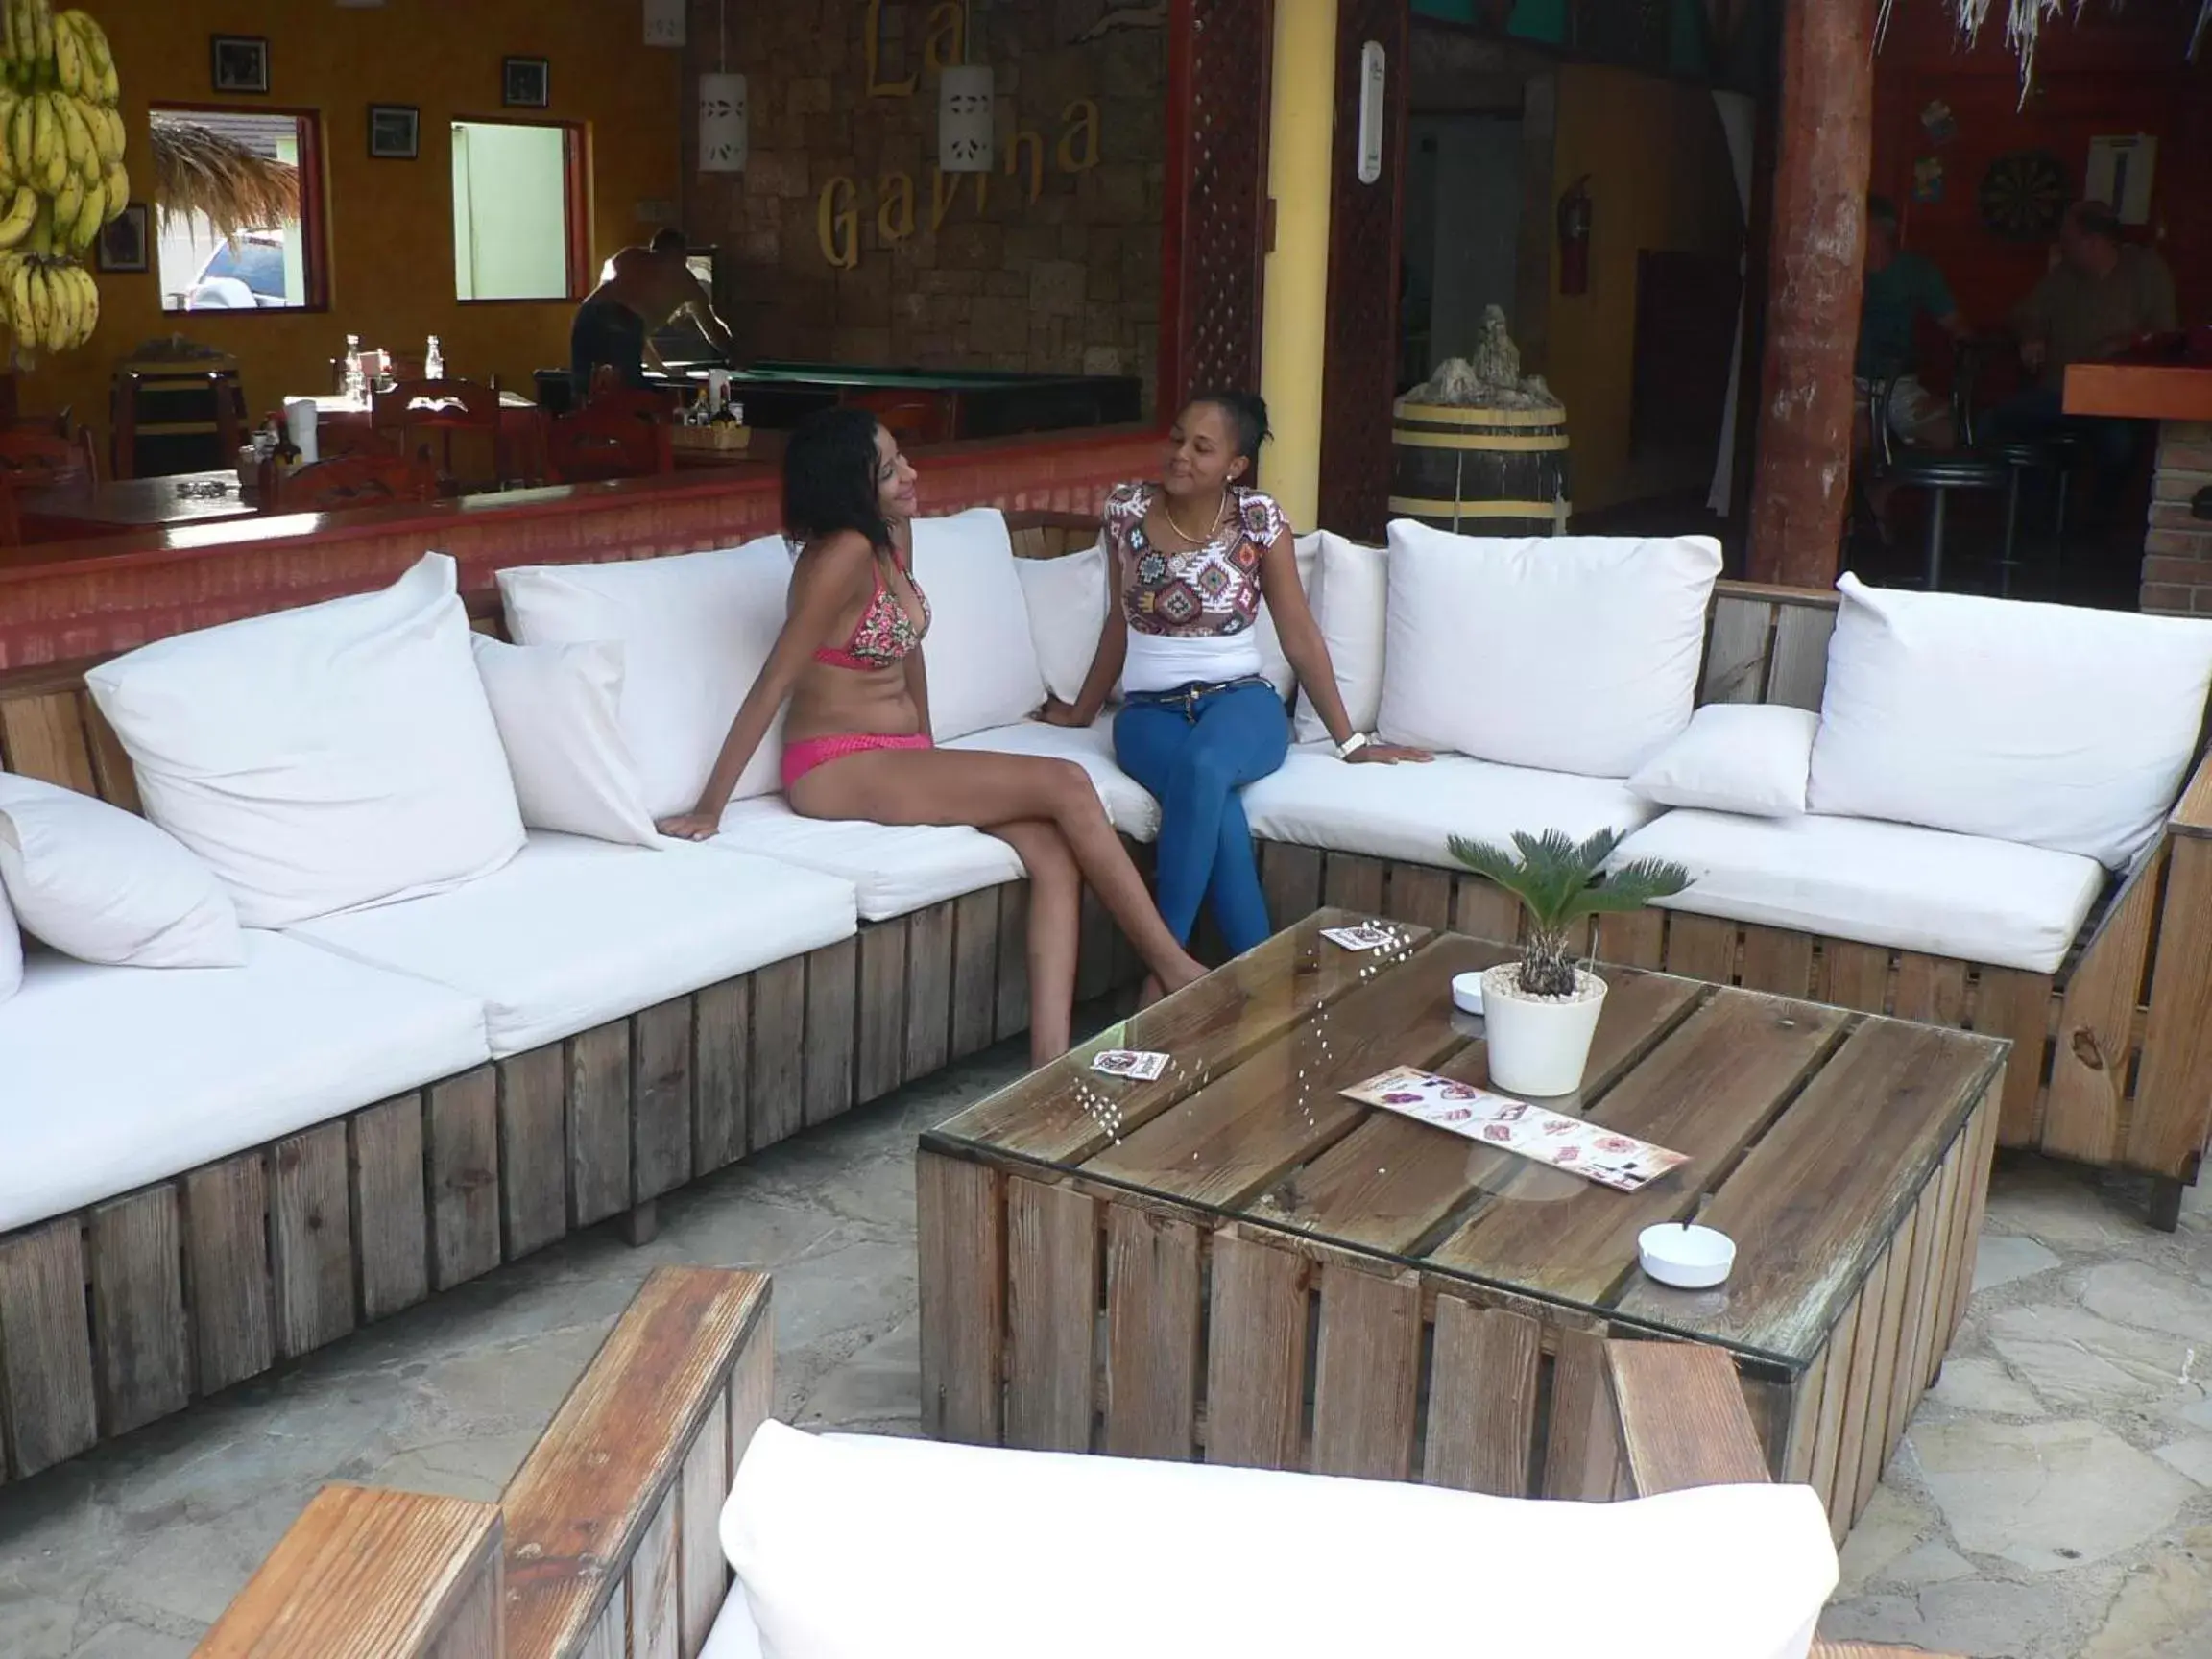 Lounge or bar in Hotel Voramar